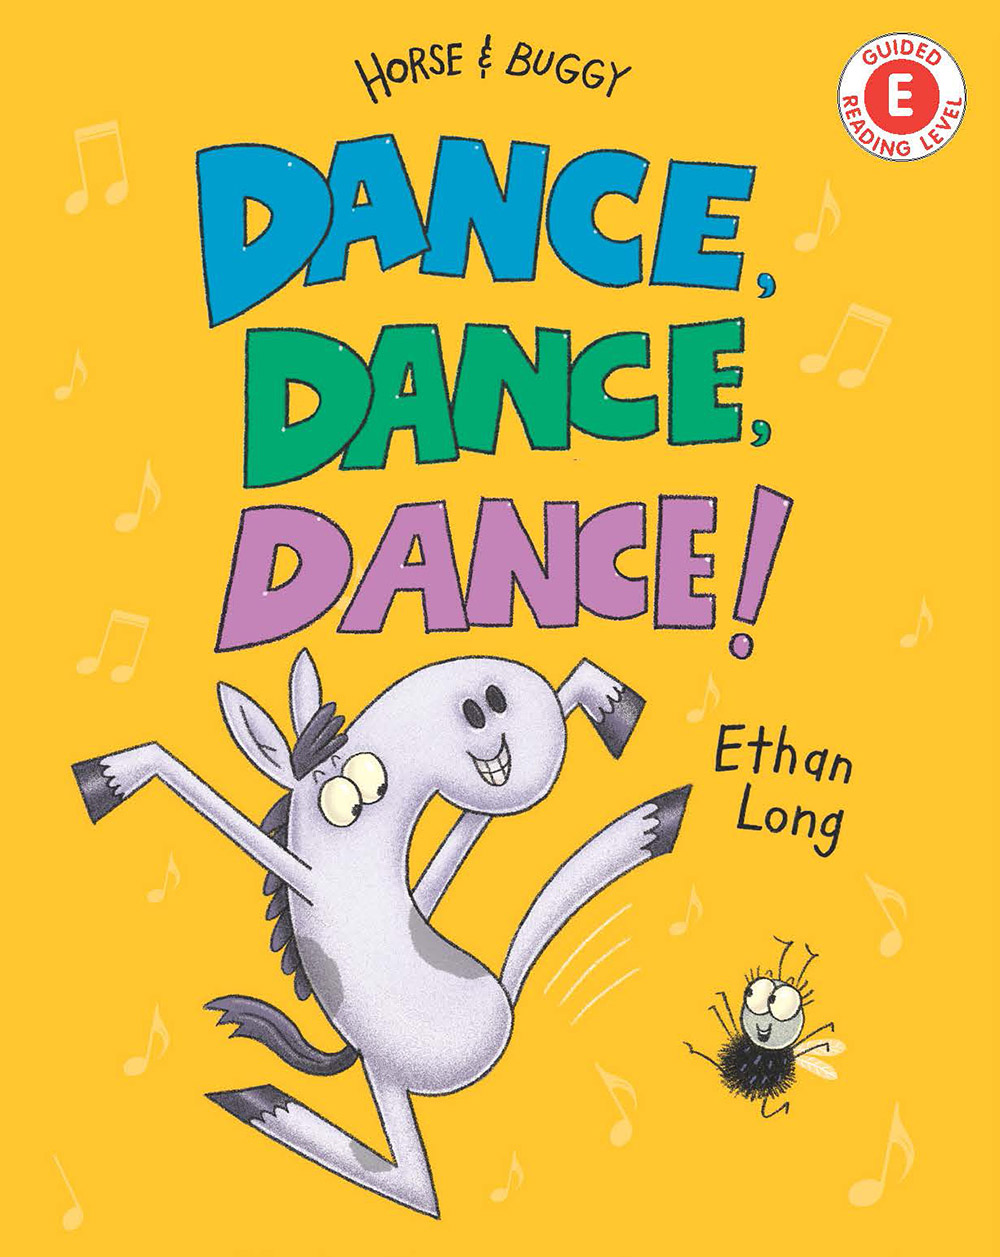 Long, Ethan 2018_02 - DANCE DANCE DANCE - ER - RLM PR.jpg